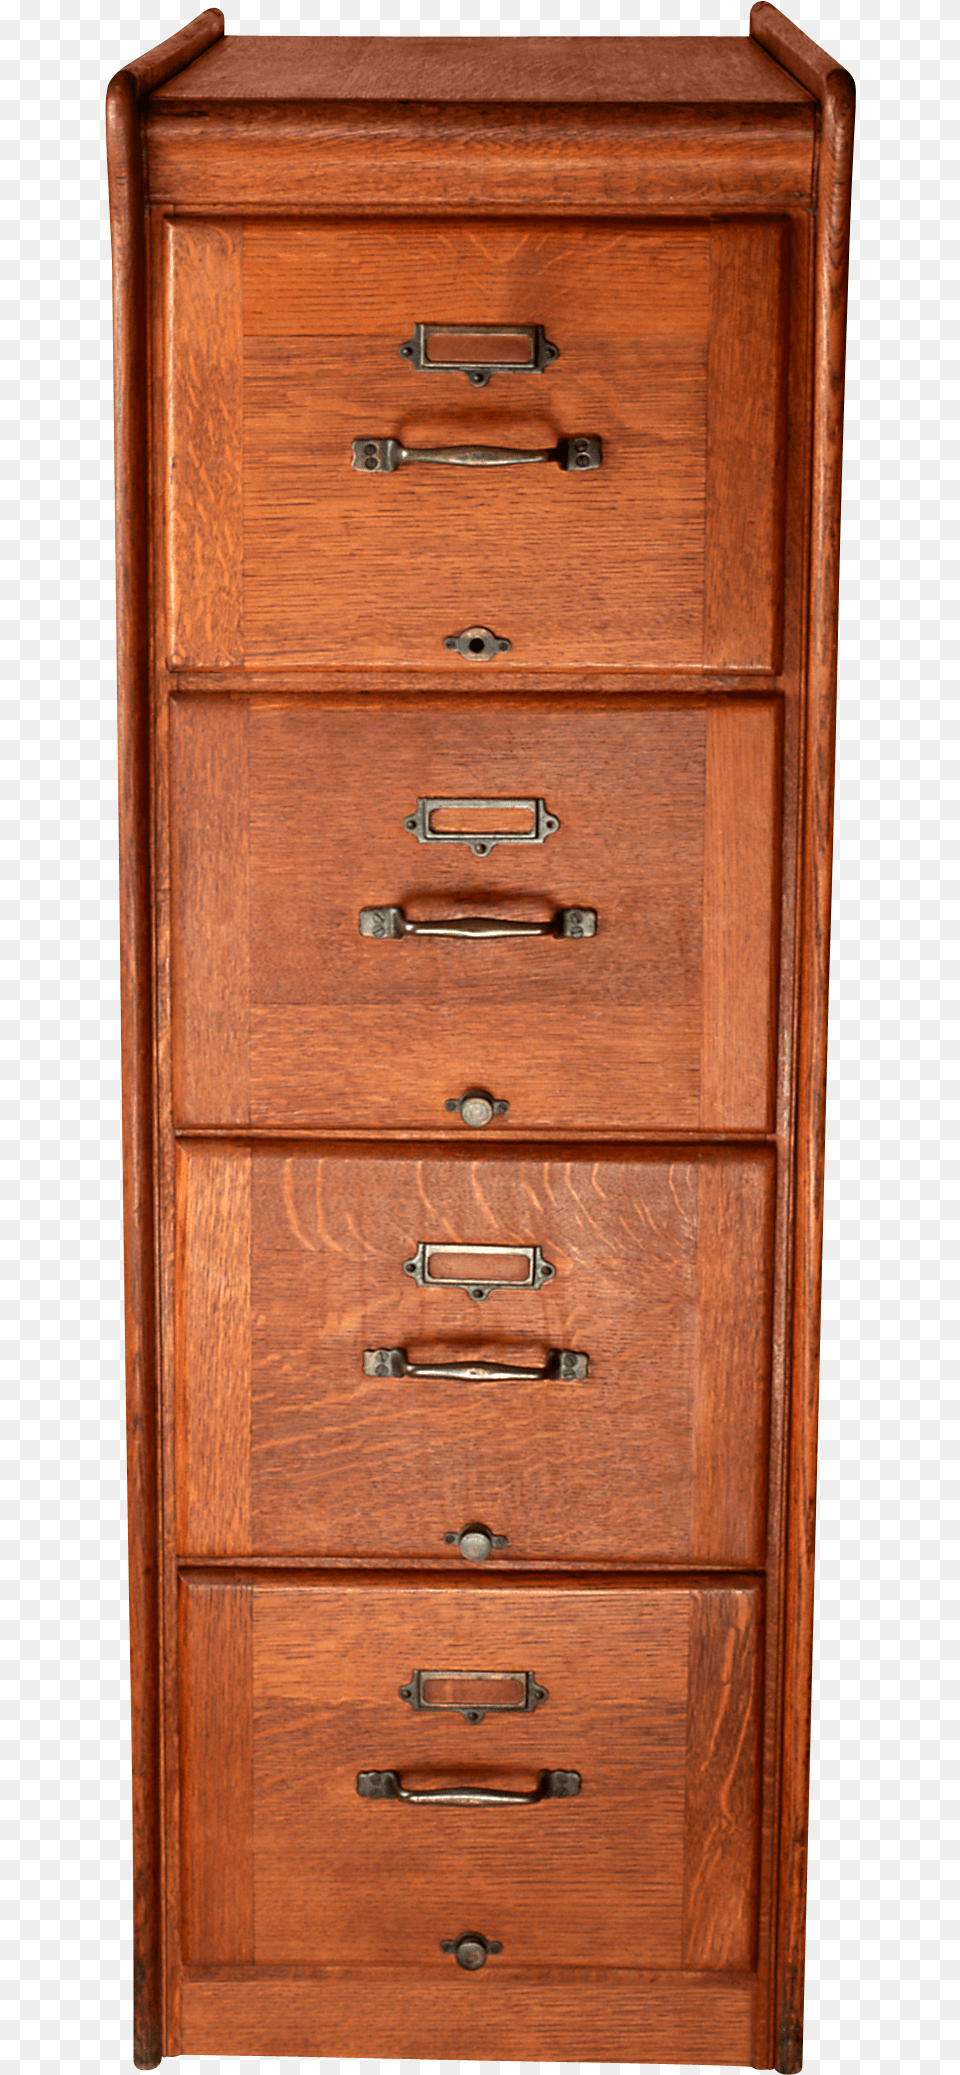 Dresser, Cabinet, Door, Drawer, Furniture Png